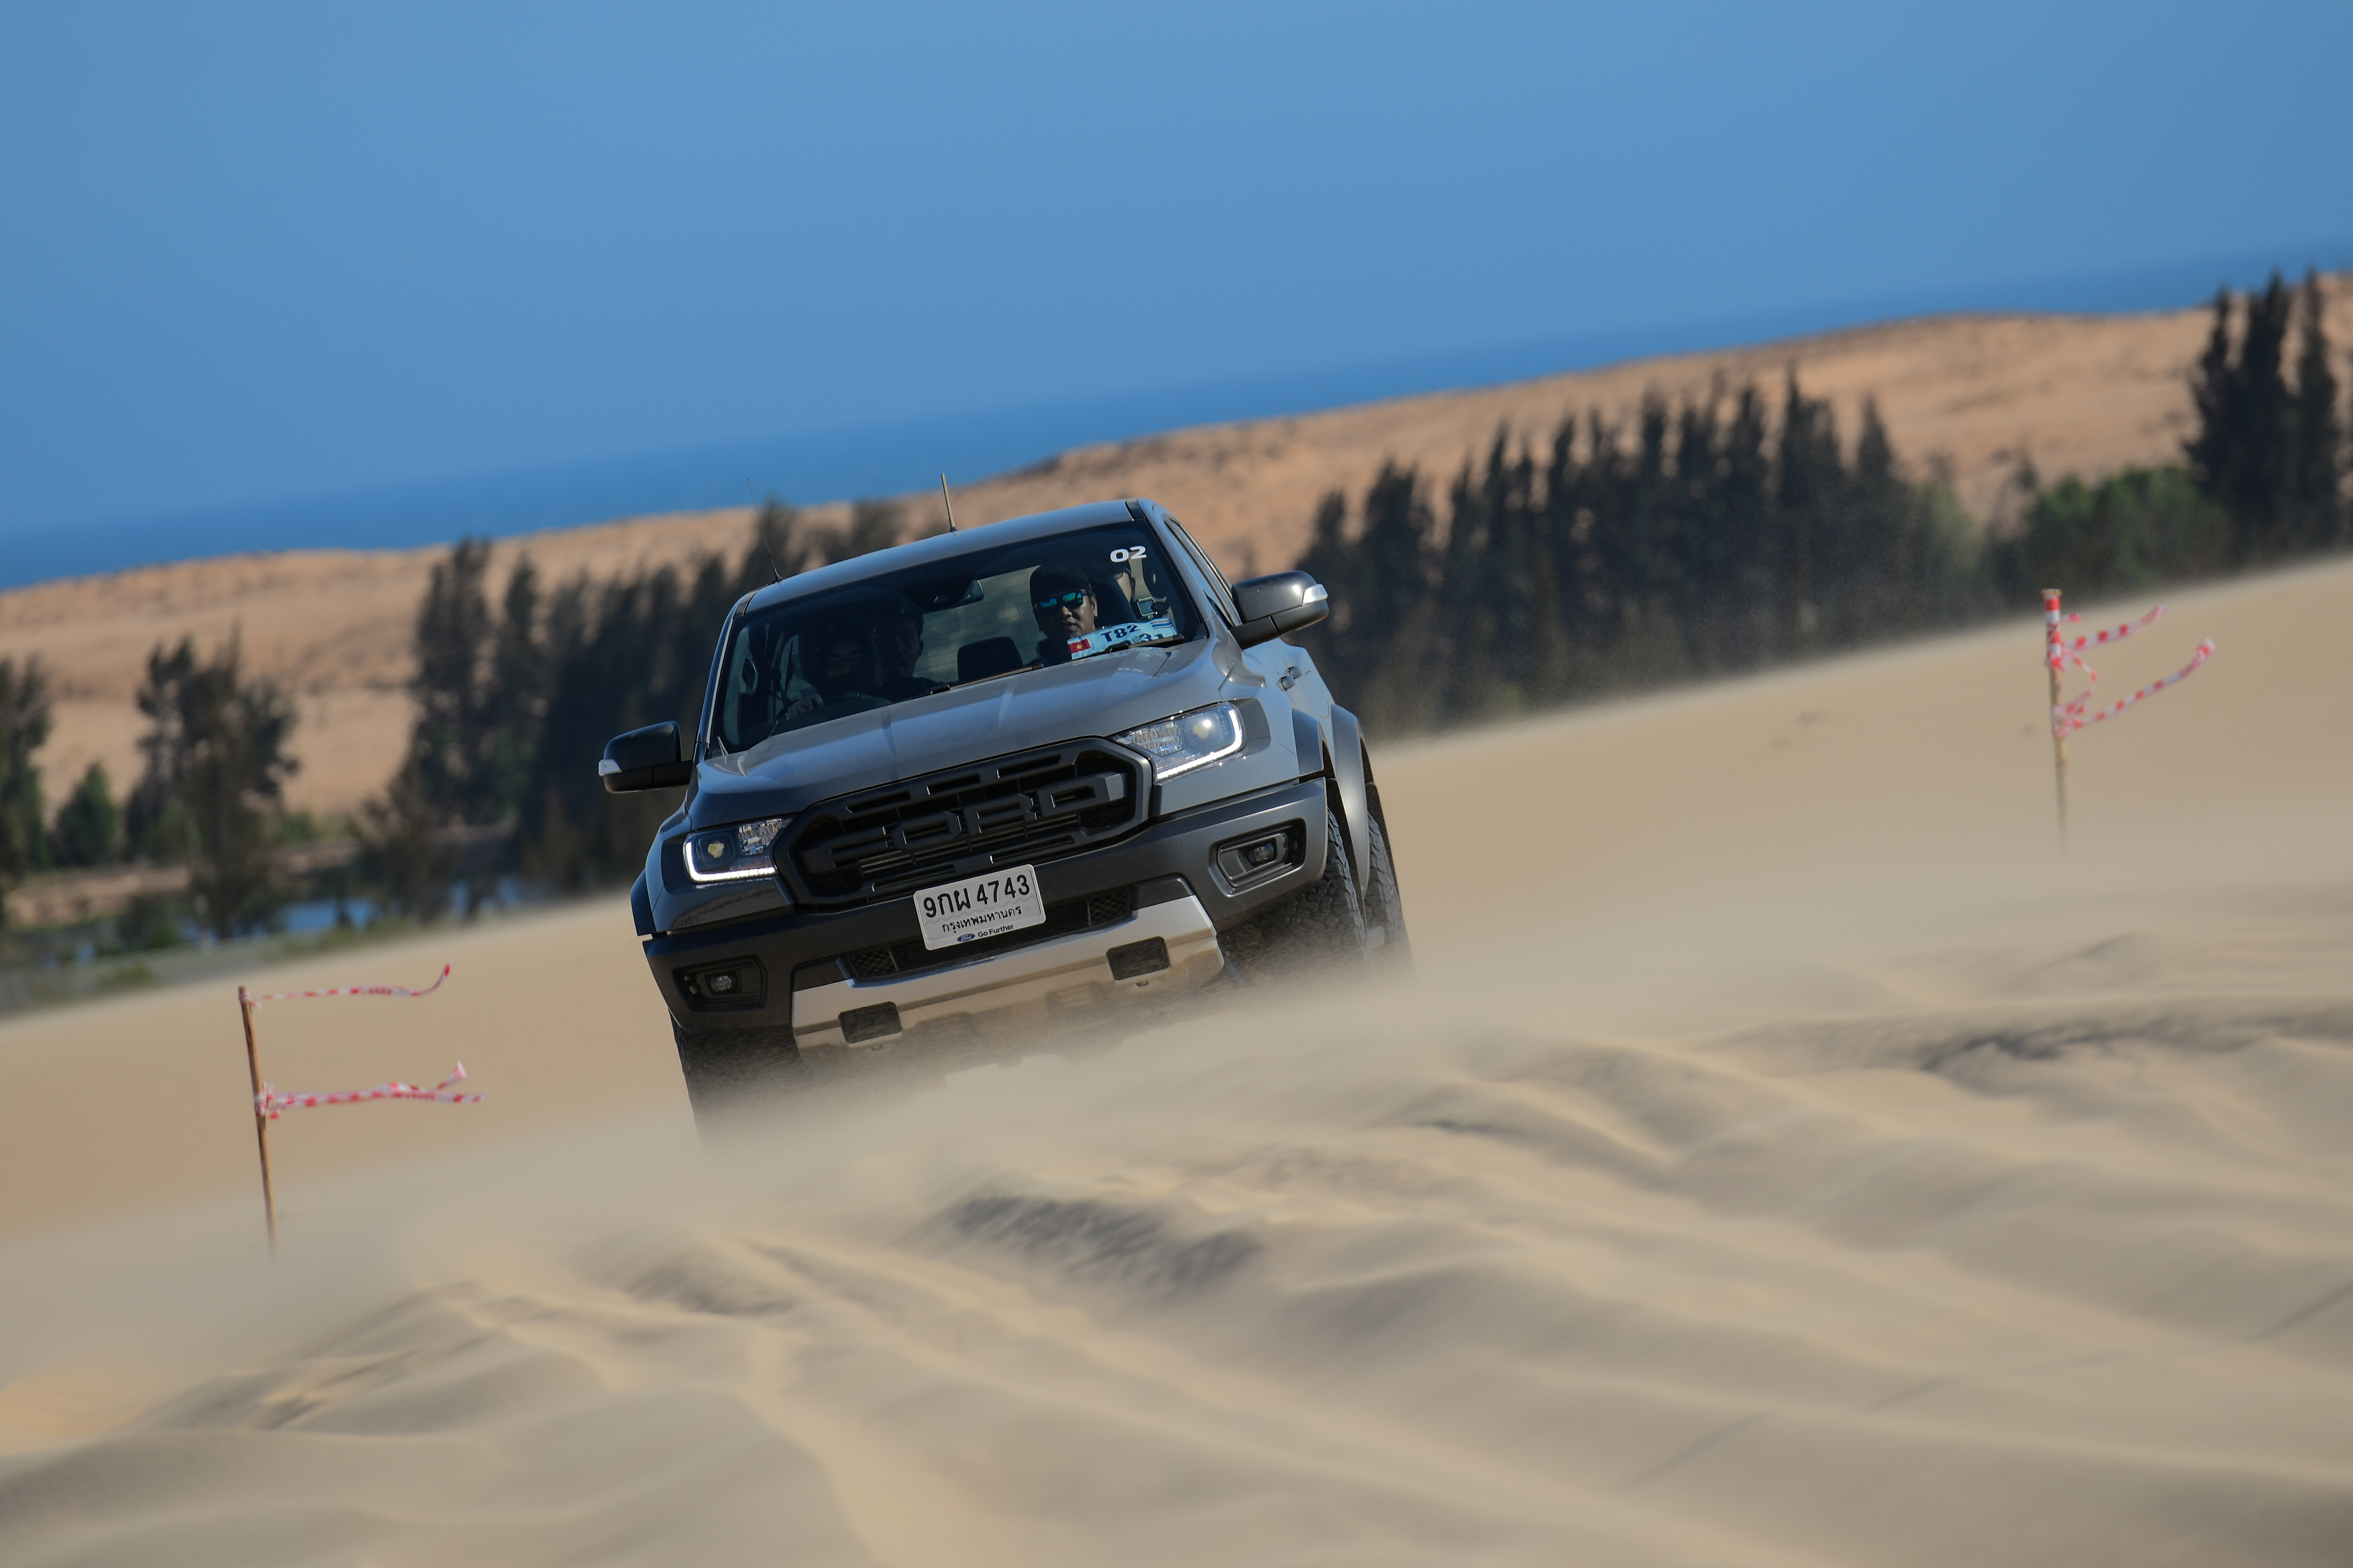 Chinh phục đồi cát Bàu Trắng cùng Ford Ranger Raptor ranger-raptor-drive-in-muine-4-3-2020-175.jpg